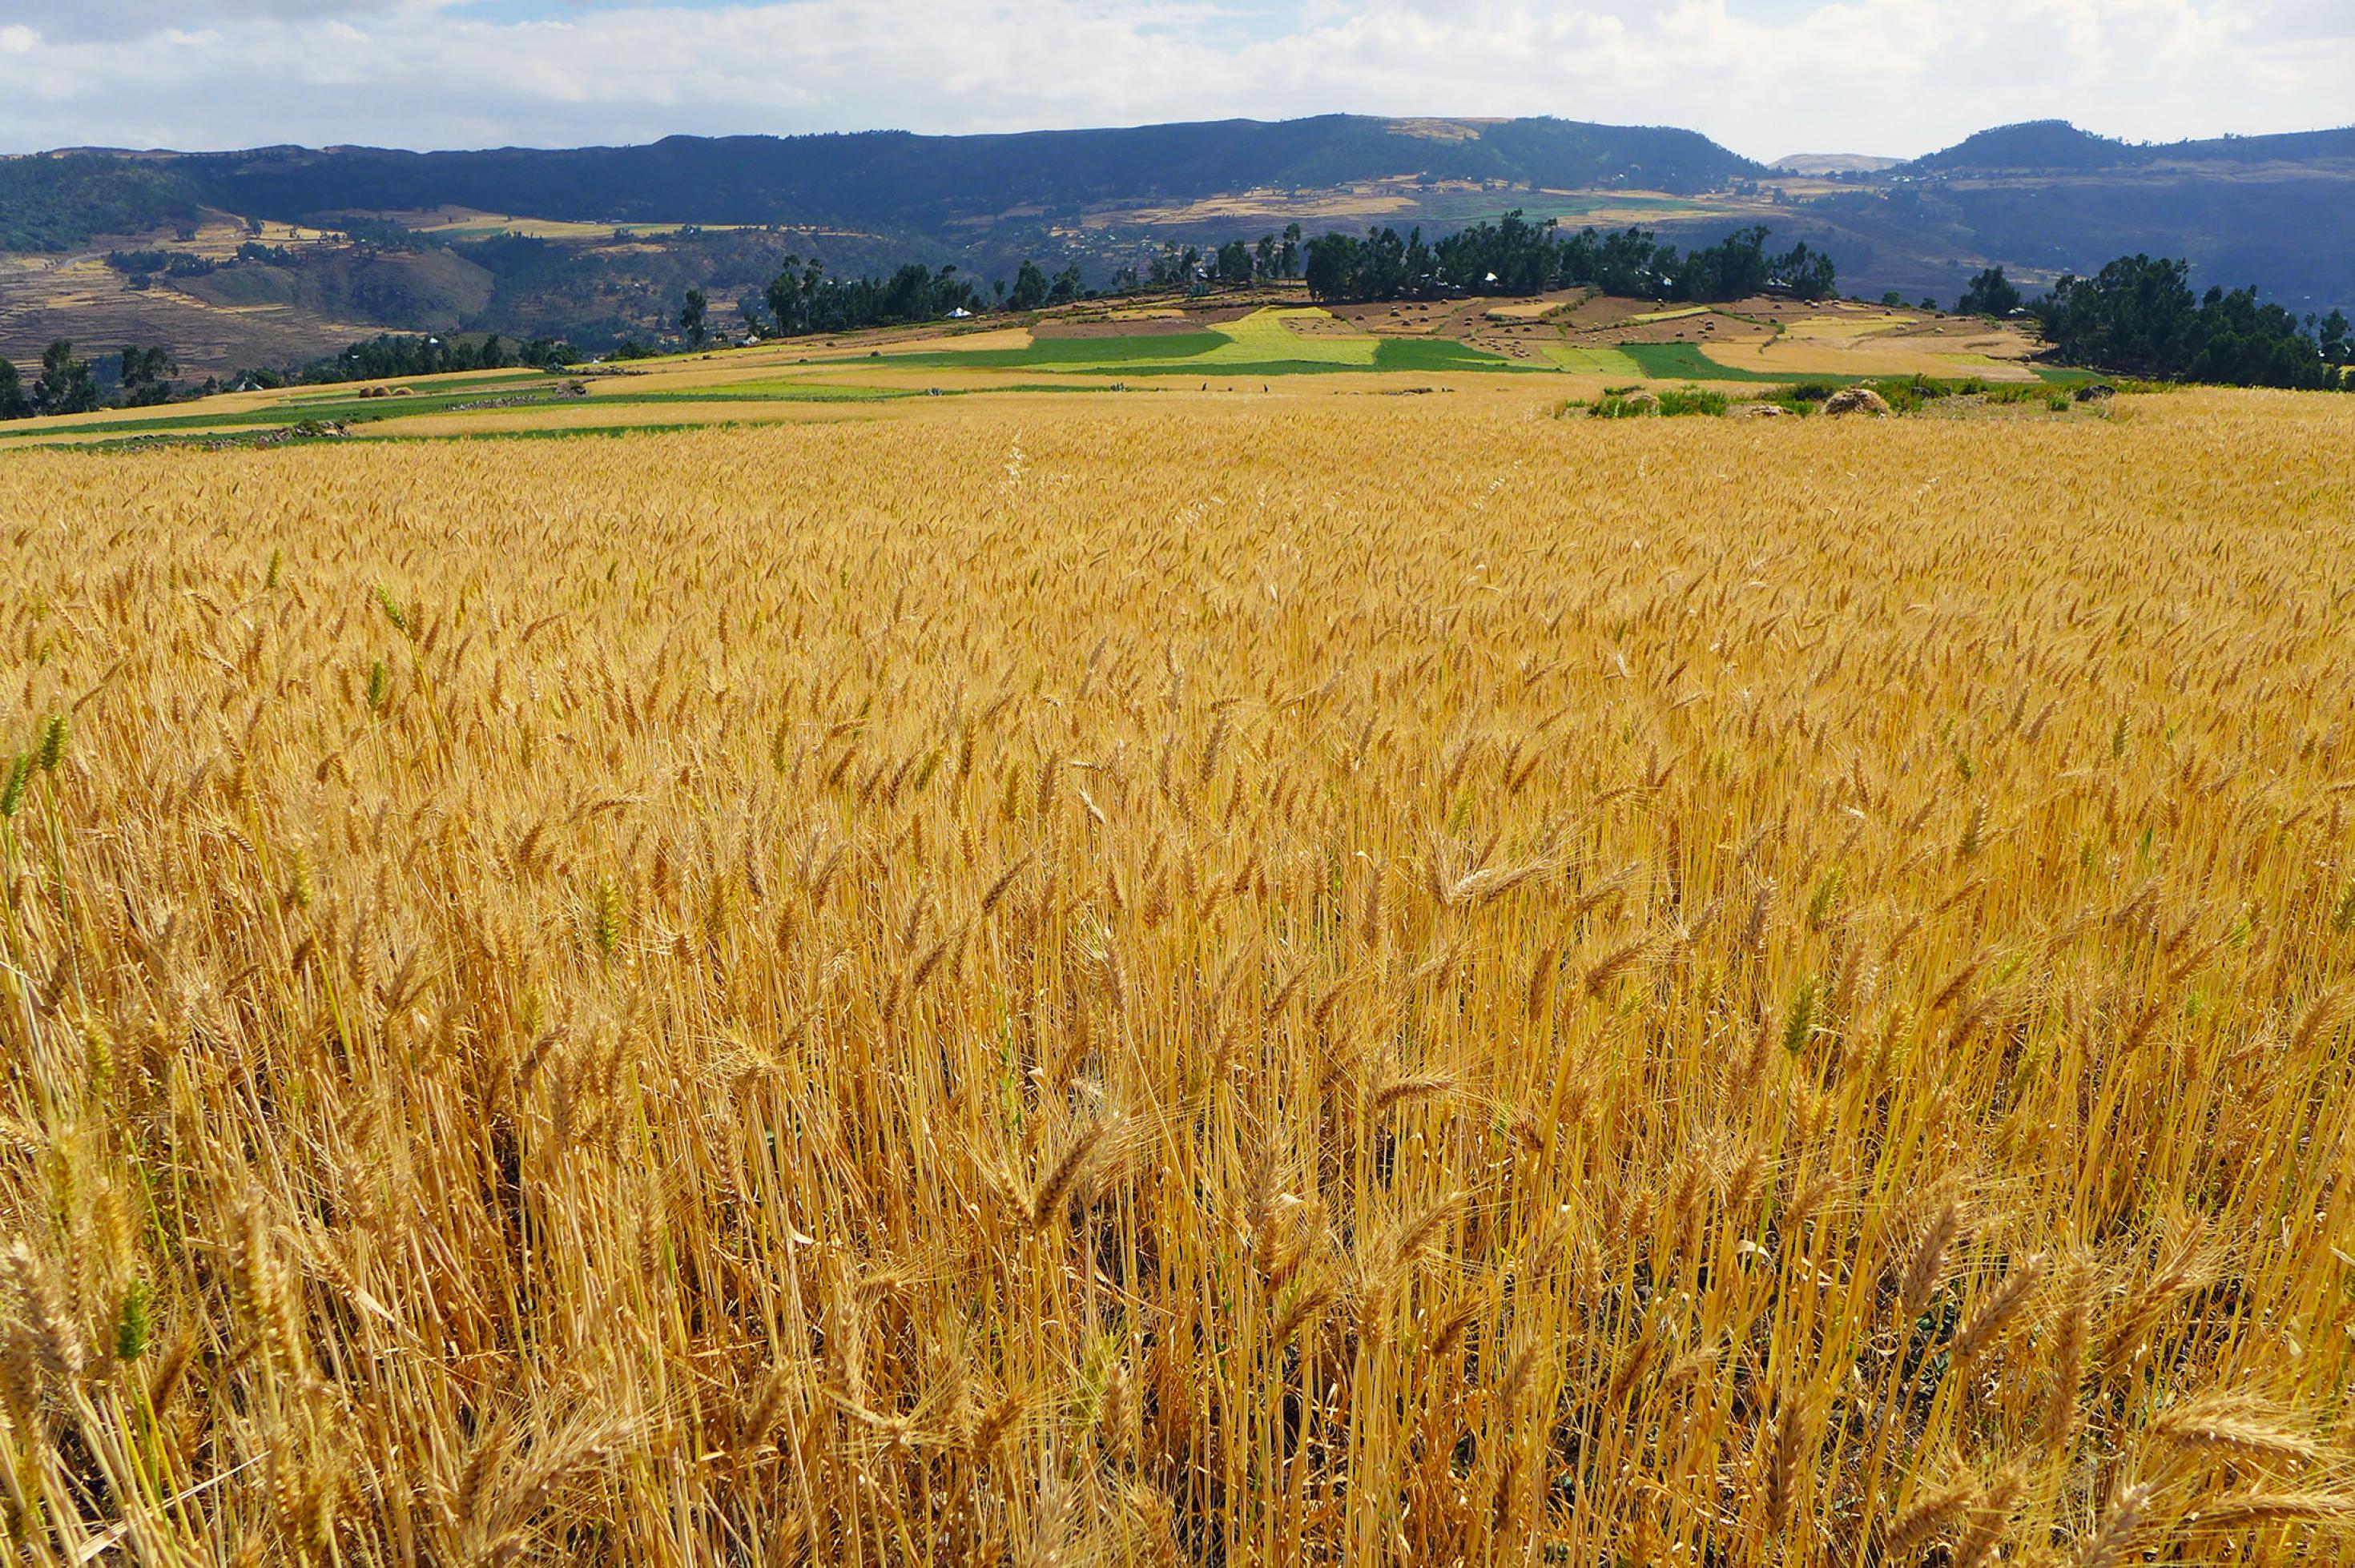 Im Vordergrund steht der reife Weizen im Feld, im Hintergrund sieht man weitere kleinräumige Felder und einen Gebirgszug.